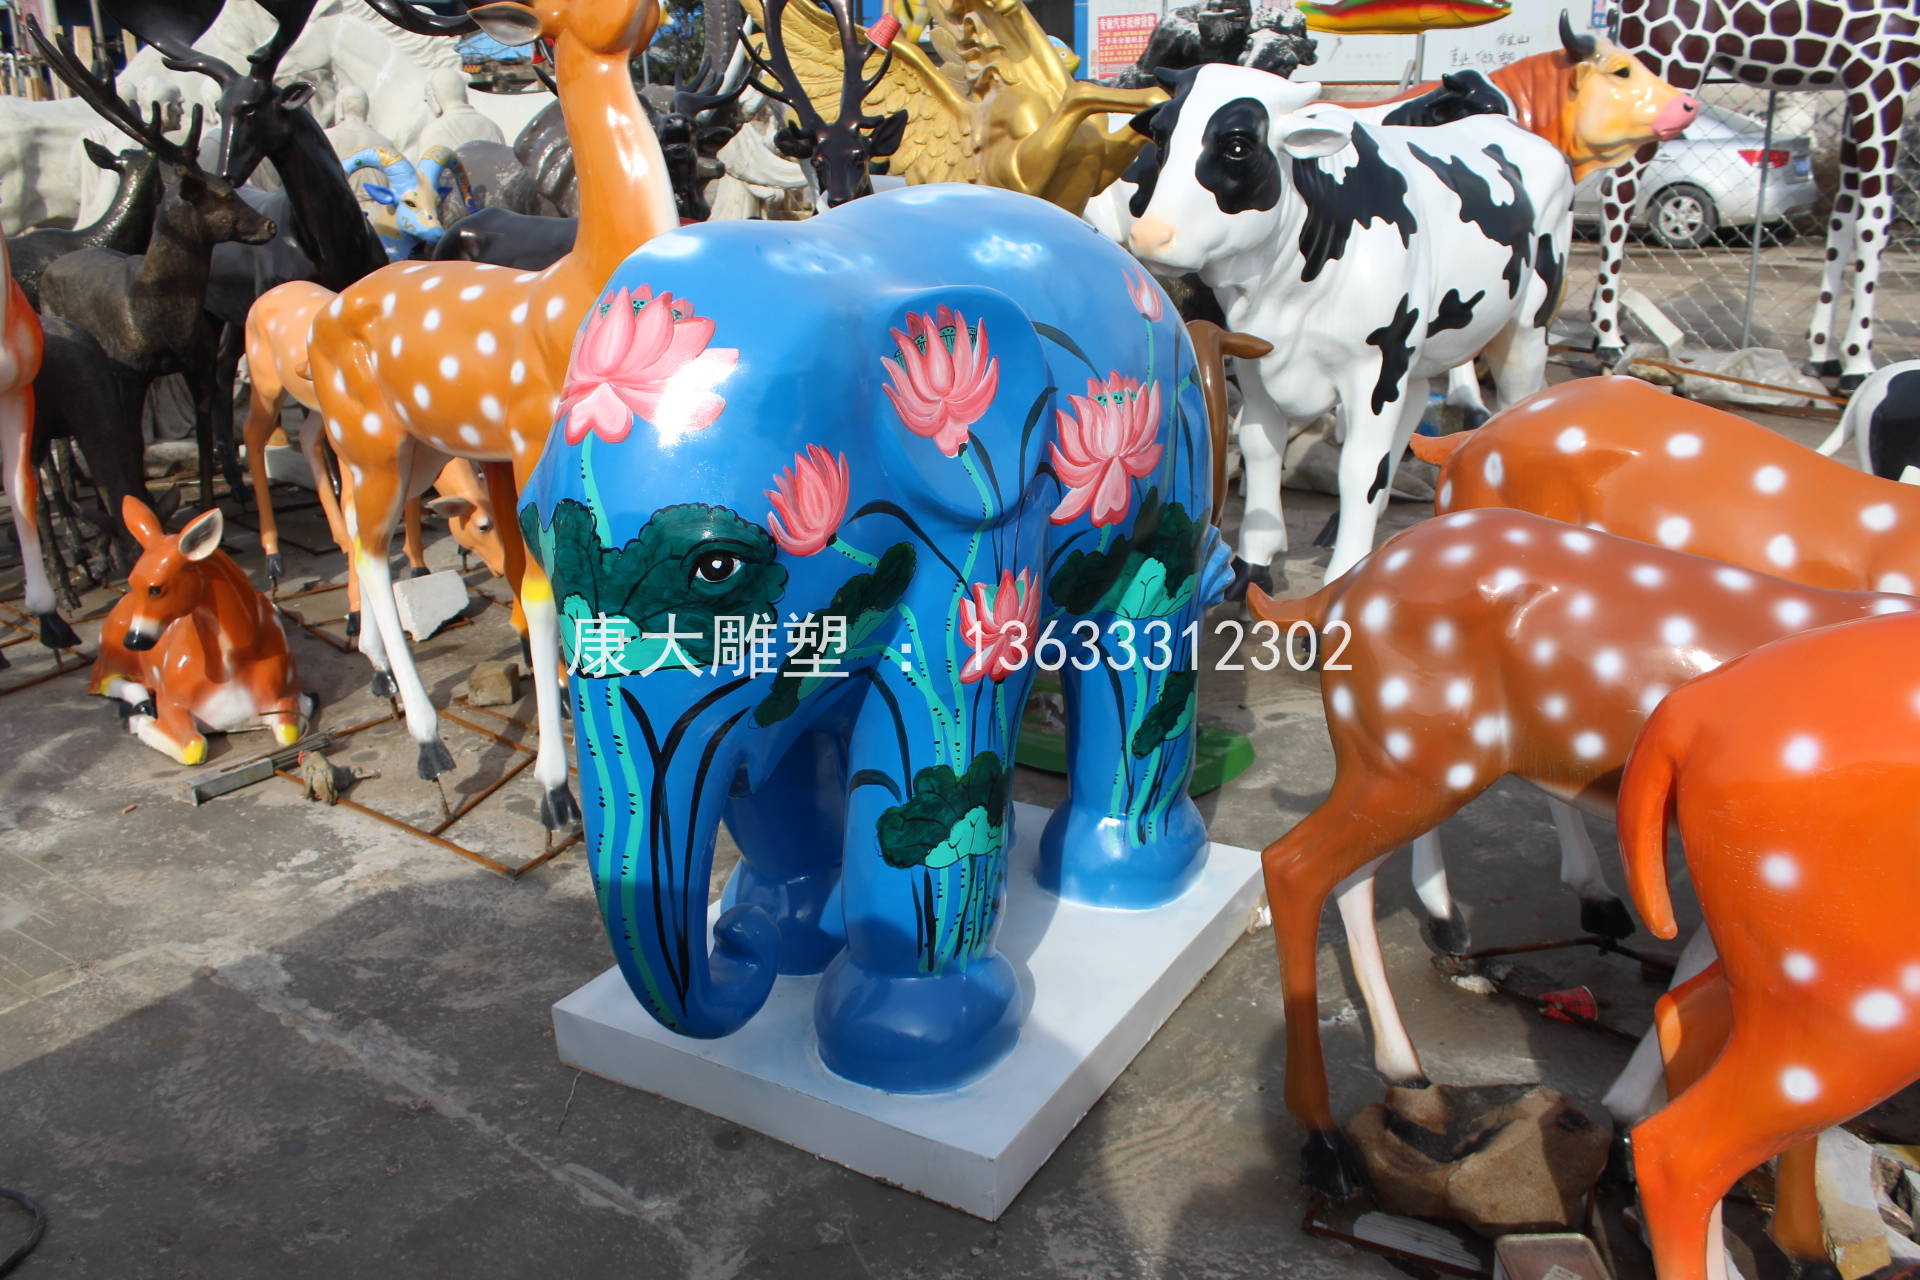 石家庄市动物大象雕塑彩绘景观动物雕刻摆件厂家动物大象雕塑彩绘景观动物雕刻摆件